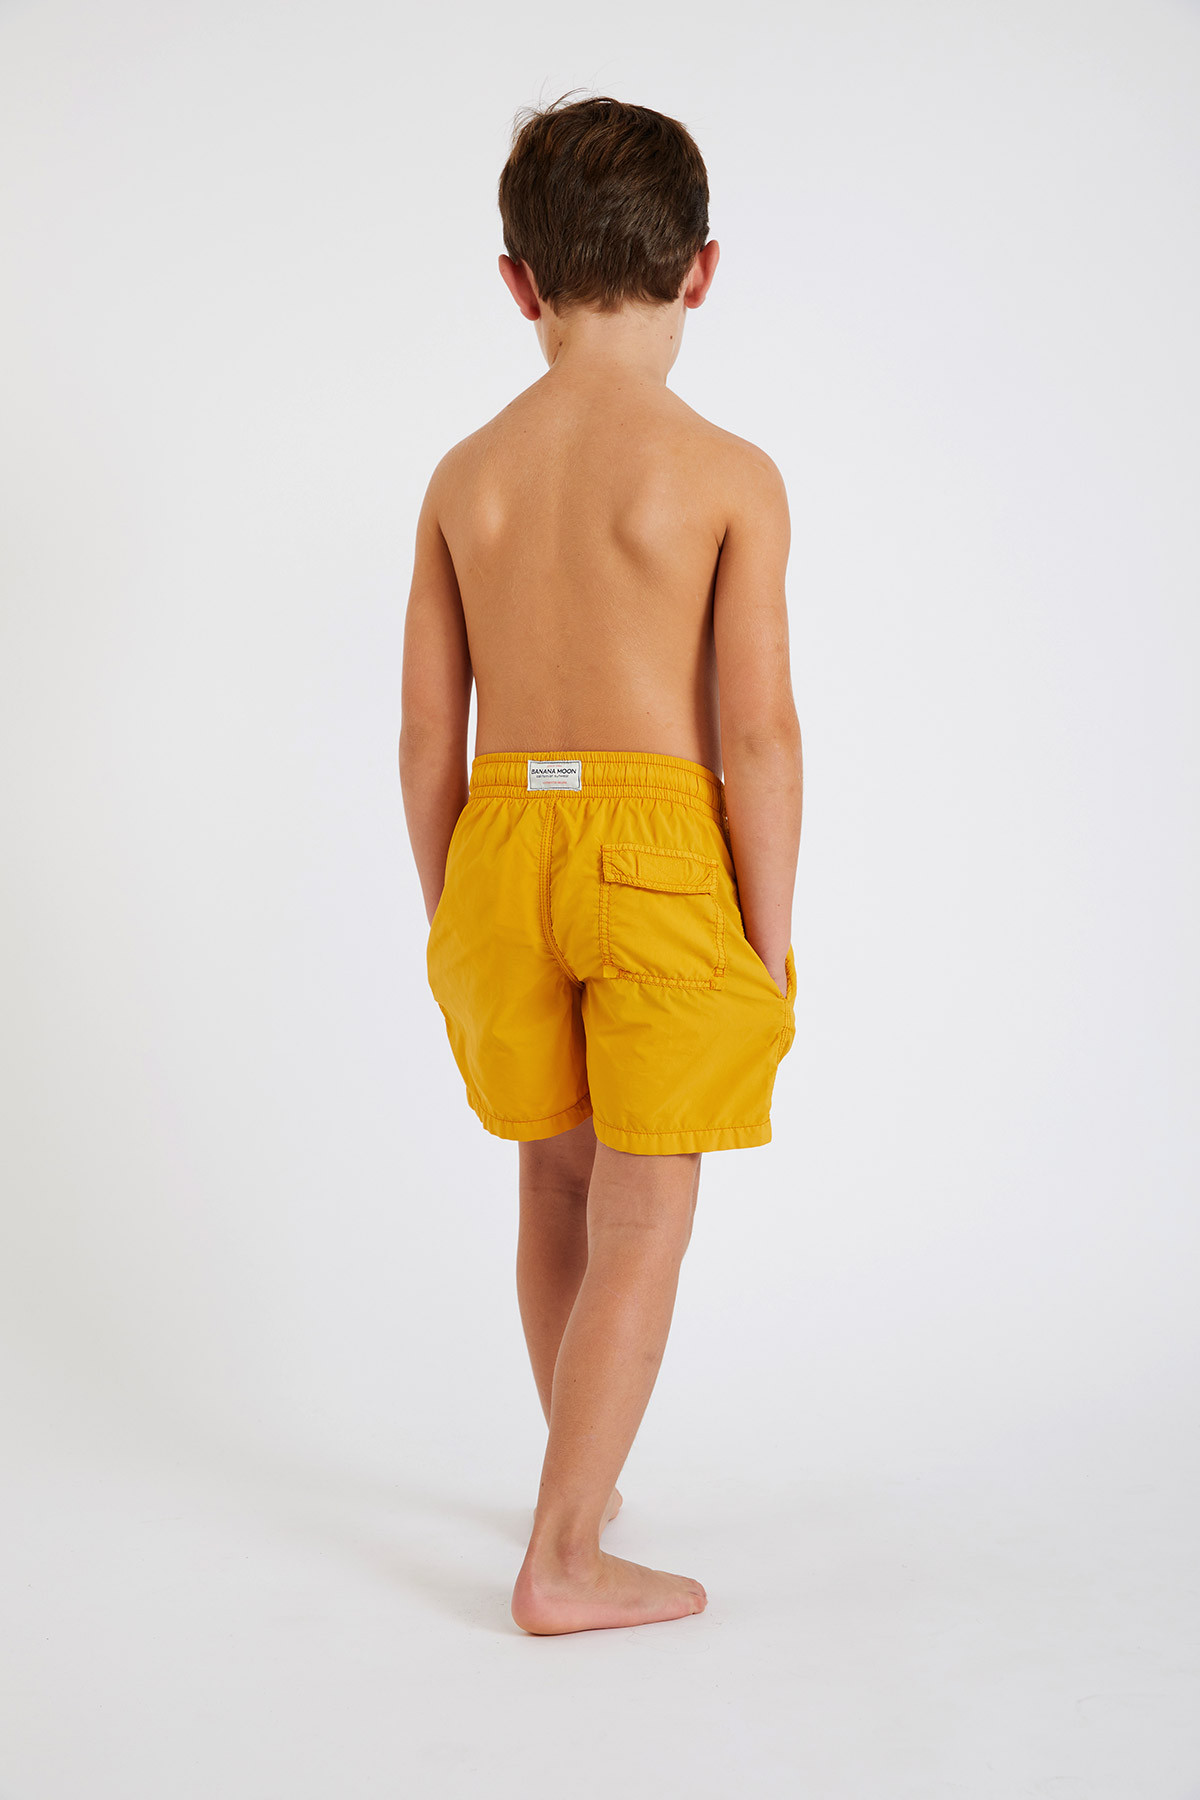 Children's swim shorts, Plain yellow swimwear